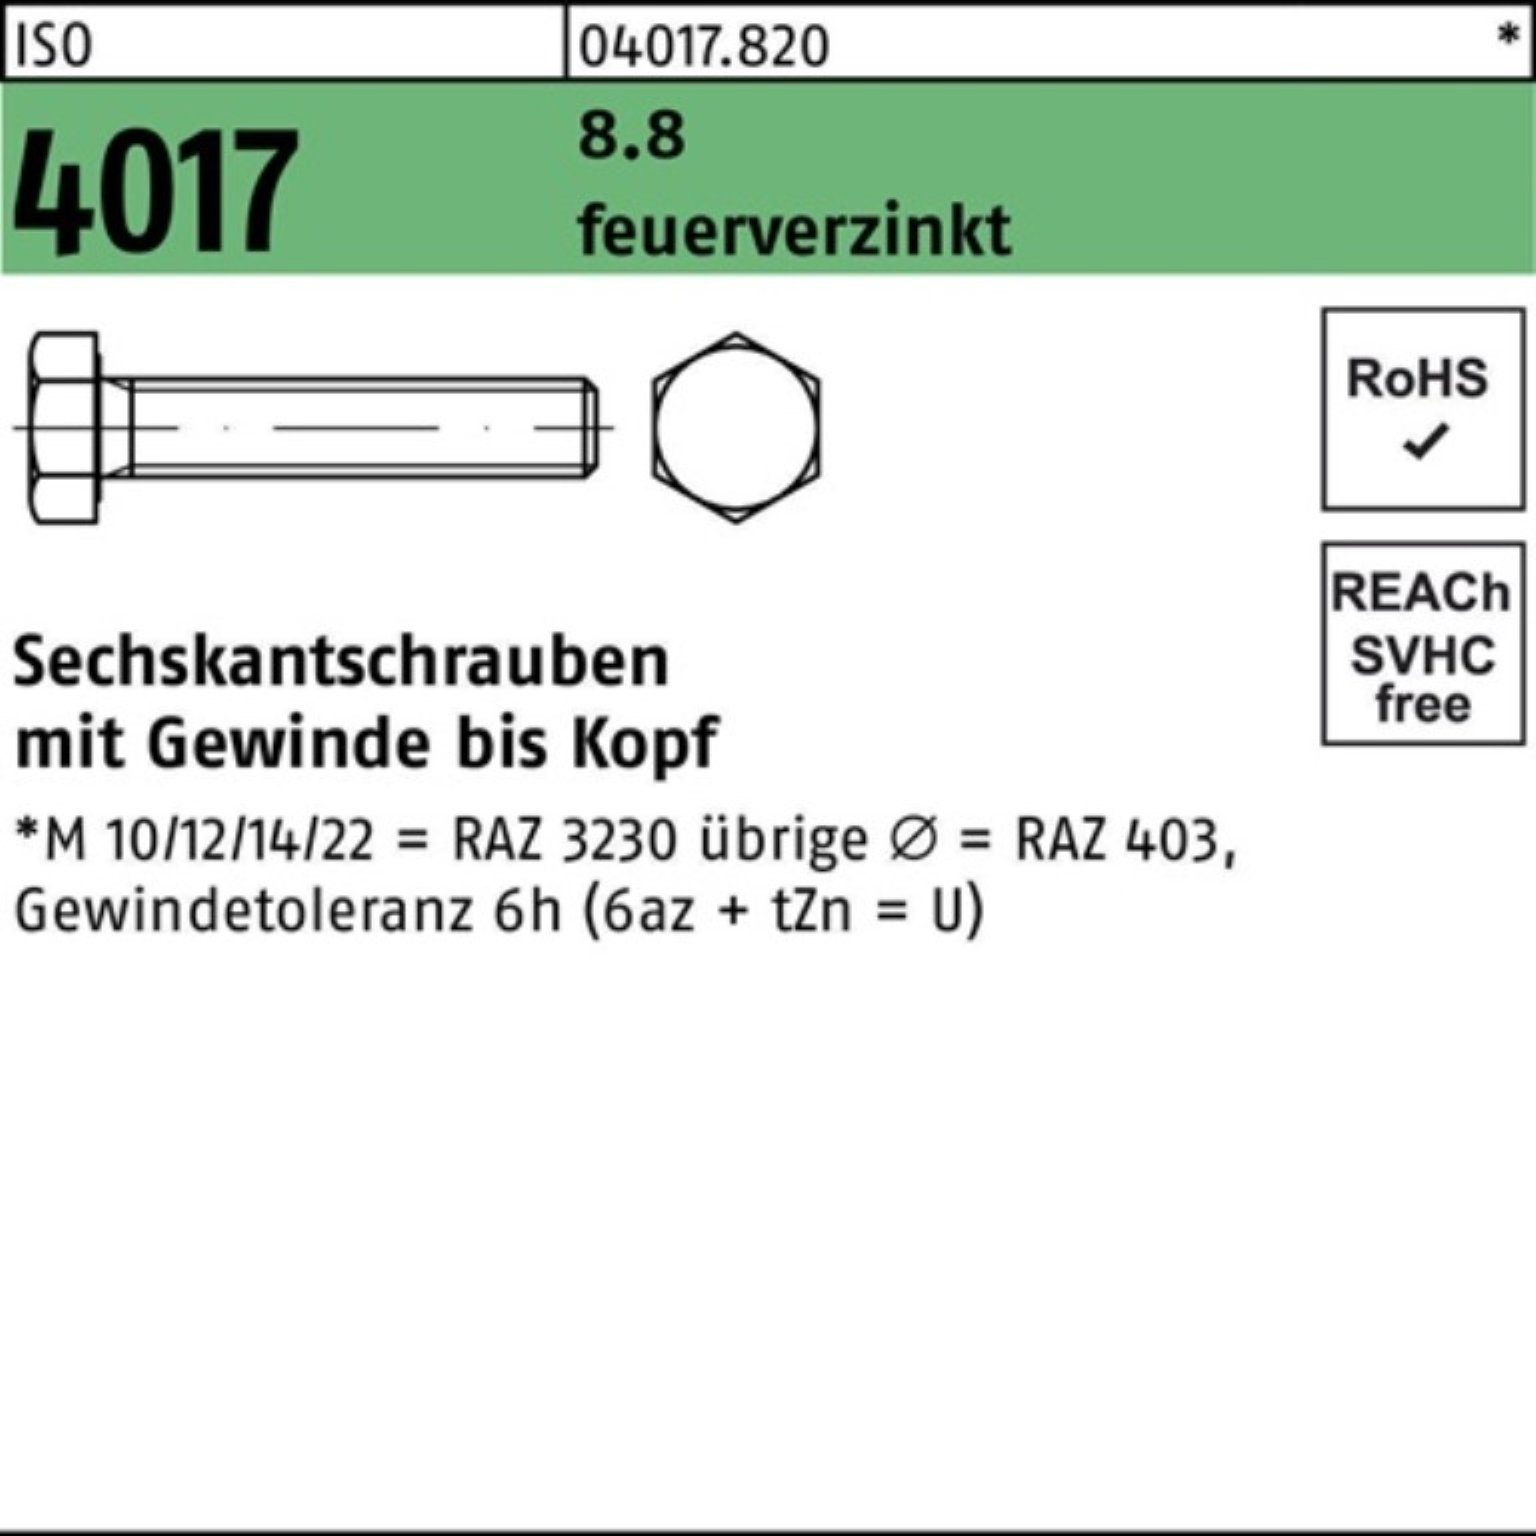 Bufab Sechskantschraube 100er Pack Sechskantschraube ISO 4017 VG M16x 80 8.8 feuerverz. 25 St